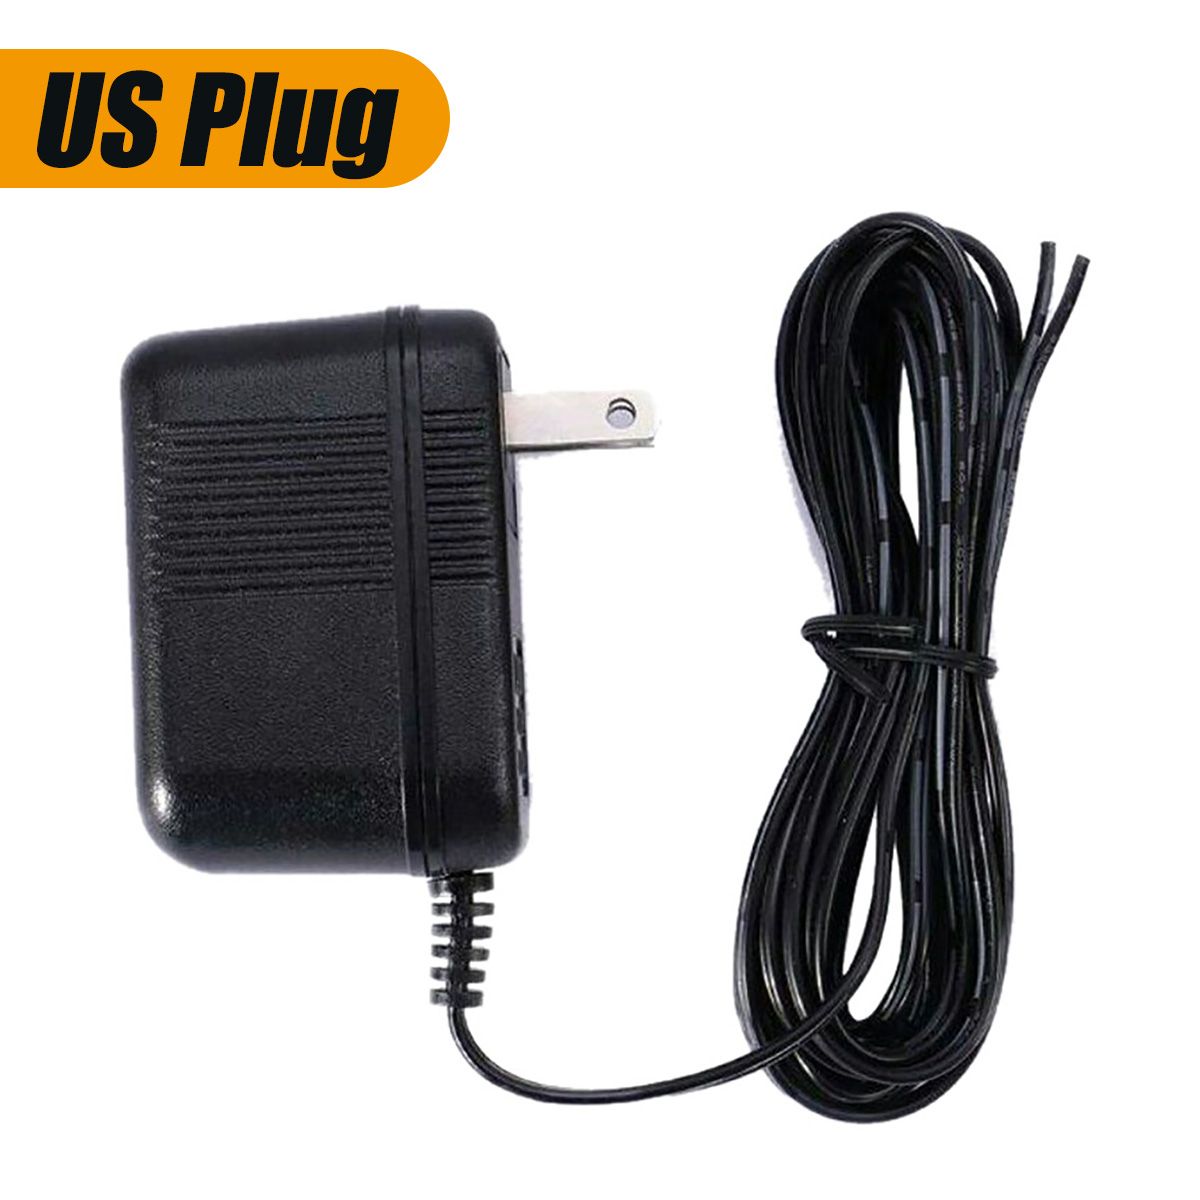 3M-US-Plug-Video-Doorbell-Power-Supply-Adapter-Transformer-120V-To-18V-1433068